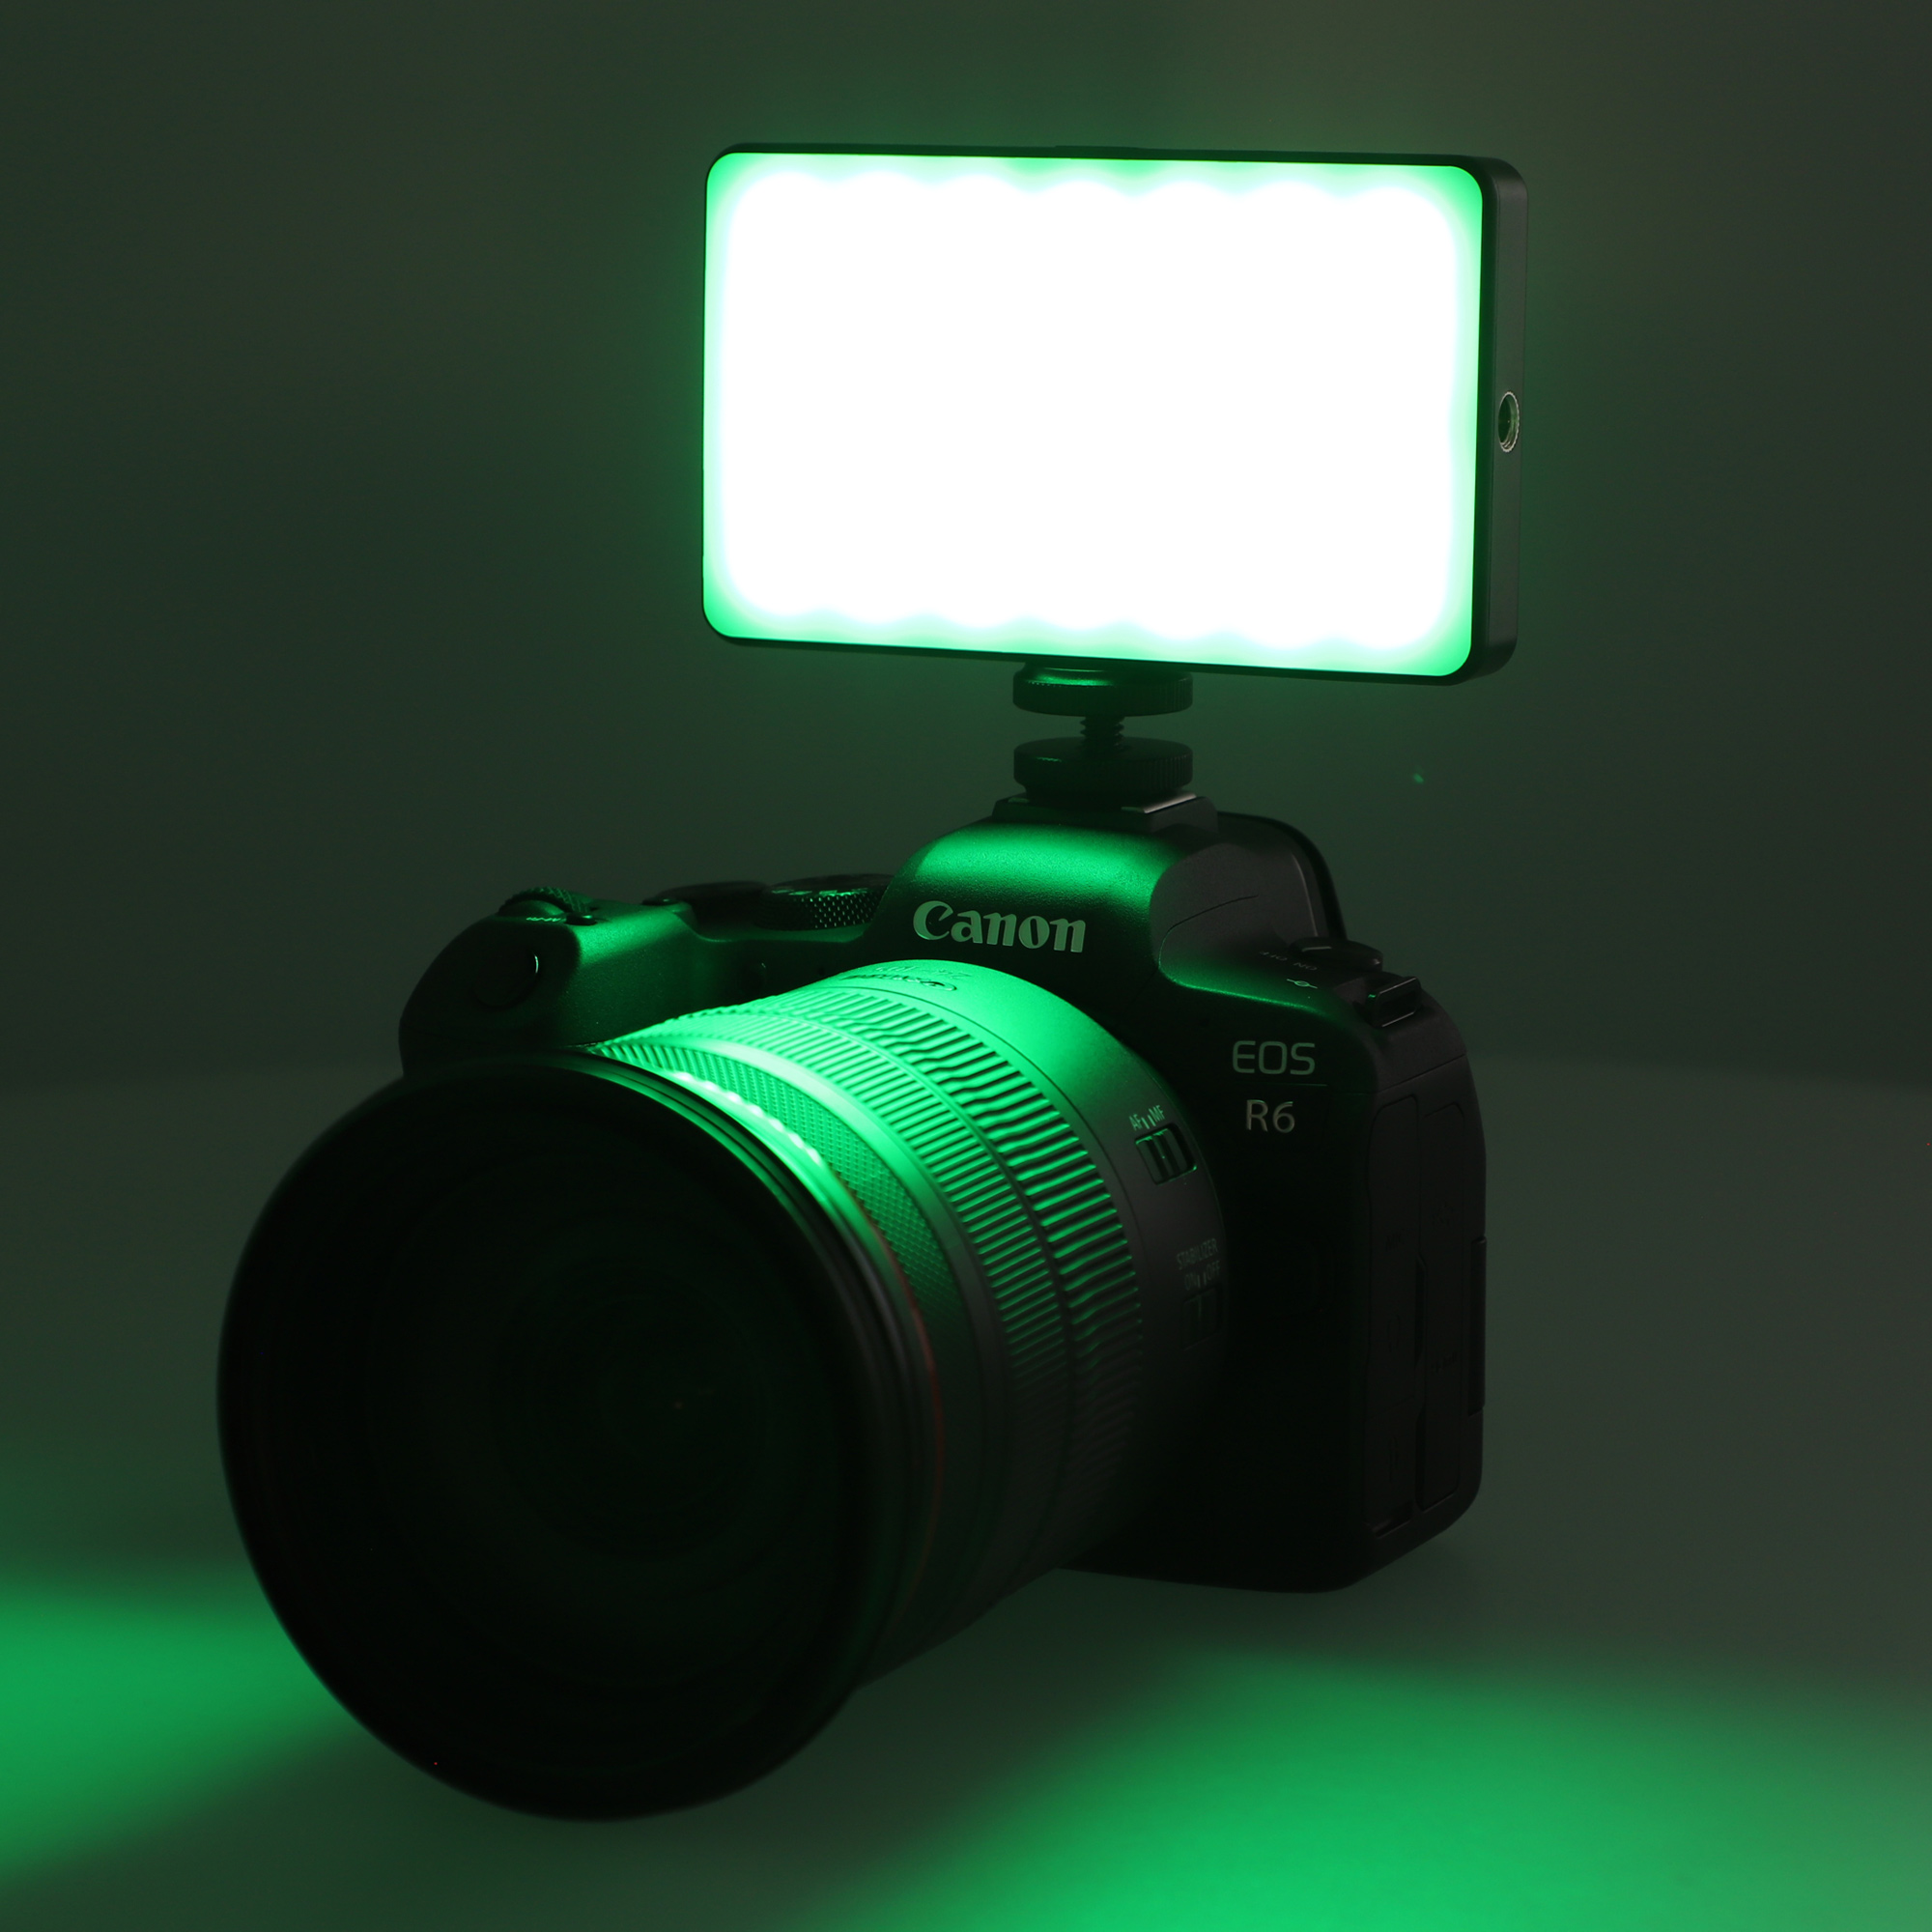 ayex vielseitige RGB LED Videoleuchte mit 20 Lichteffekten LCD-Display und integriertem Akku